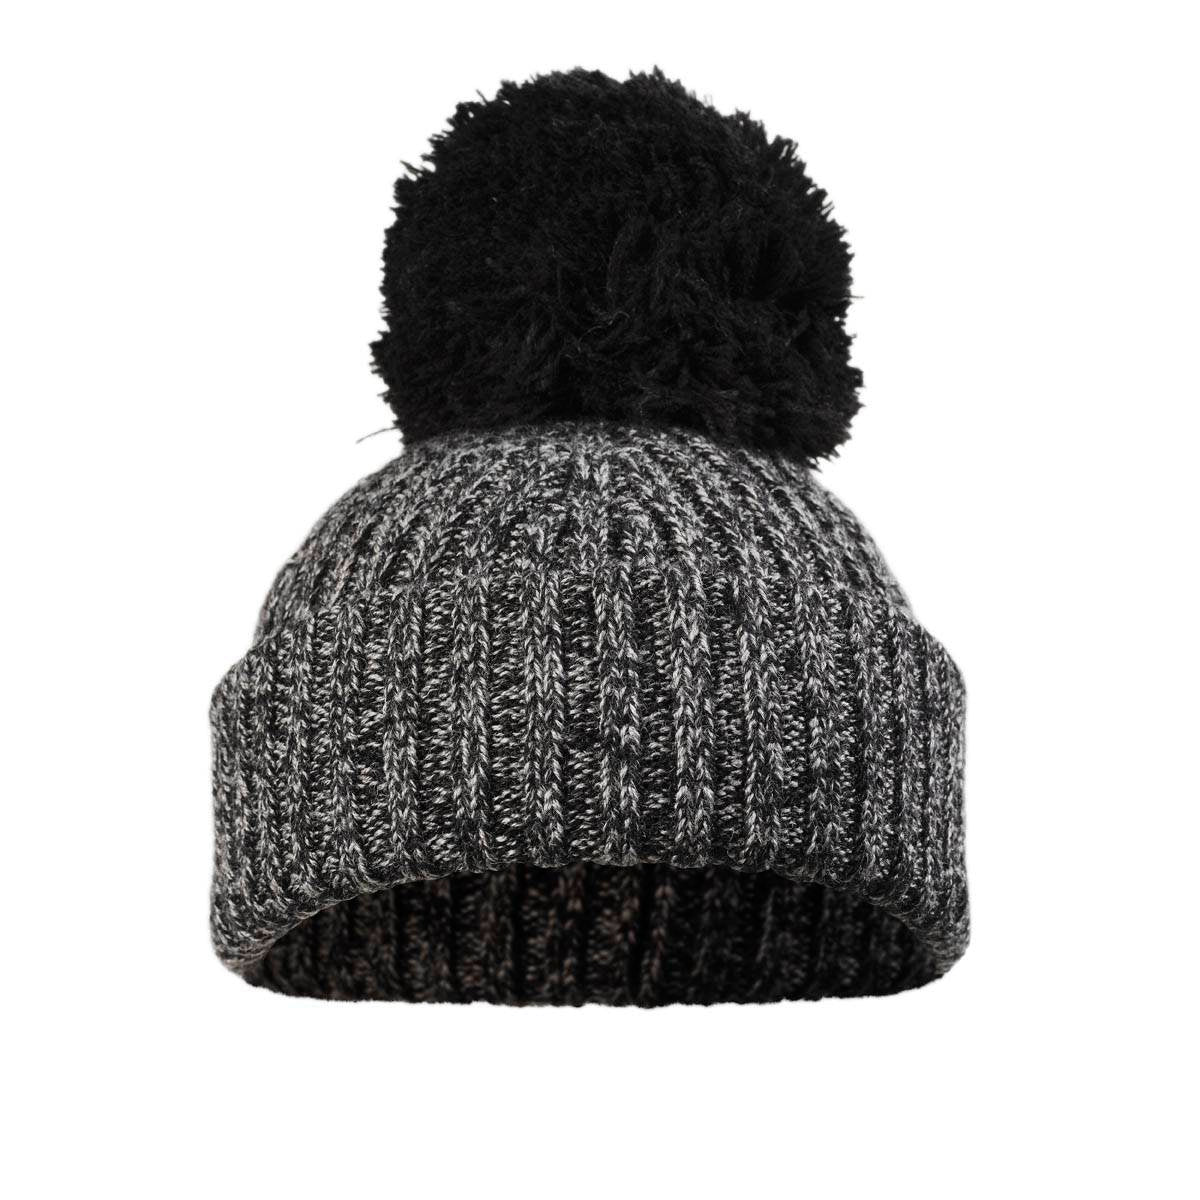 Wełniana czapka zimowa Elodie Details Tweed, 0-6 miesięcy, ciepła i stylowa czapka dla dzieci z certyfikatem RWS.